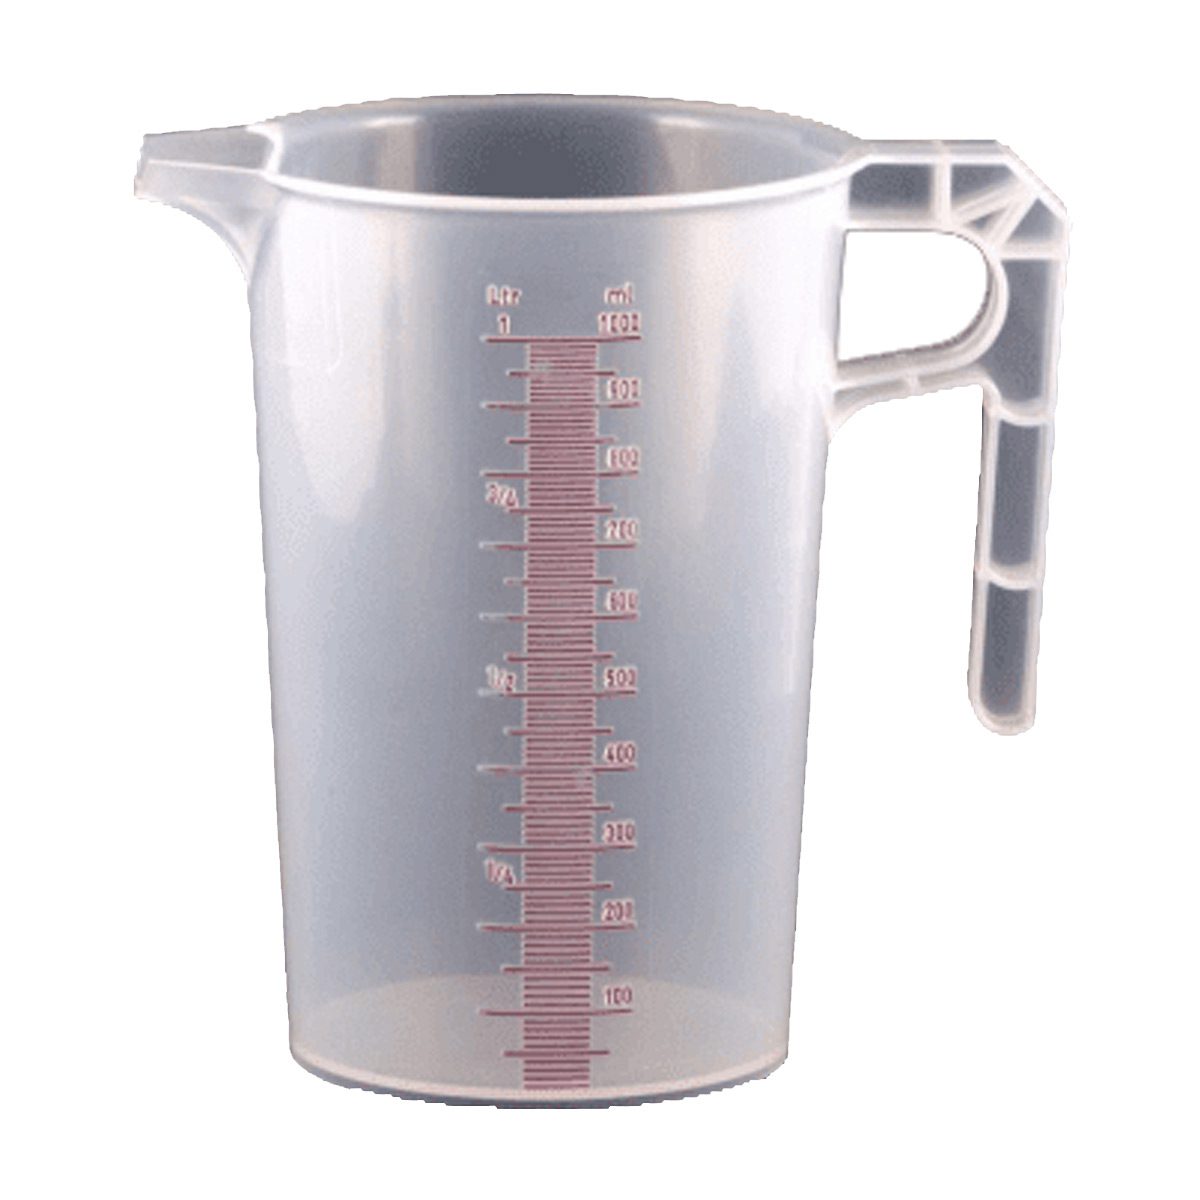 cleaning-equipment-bottles-triggers-pumps-graduated-jug-1L-litre-graduated-measuring-jug-available-in-250ml-1L-litre-3L-litre-5L-litre-sizes-vjs-distributors-JUG1